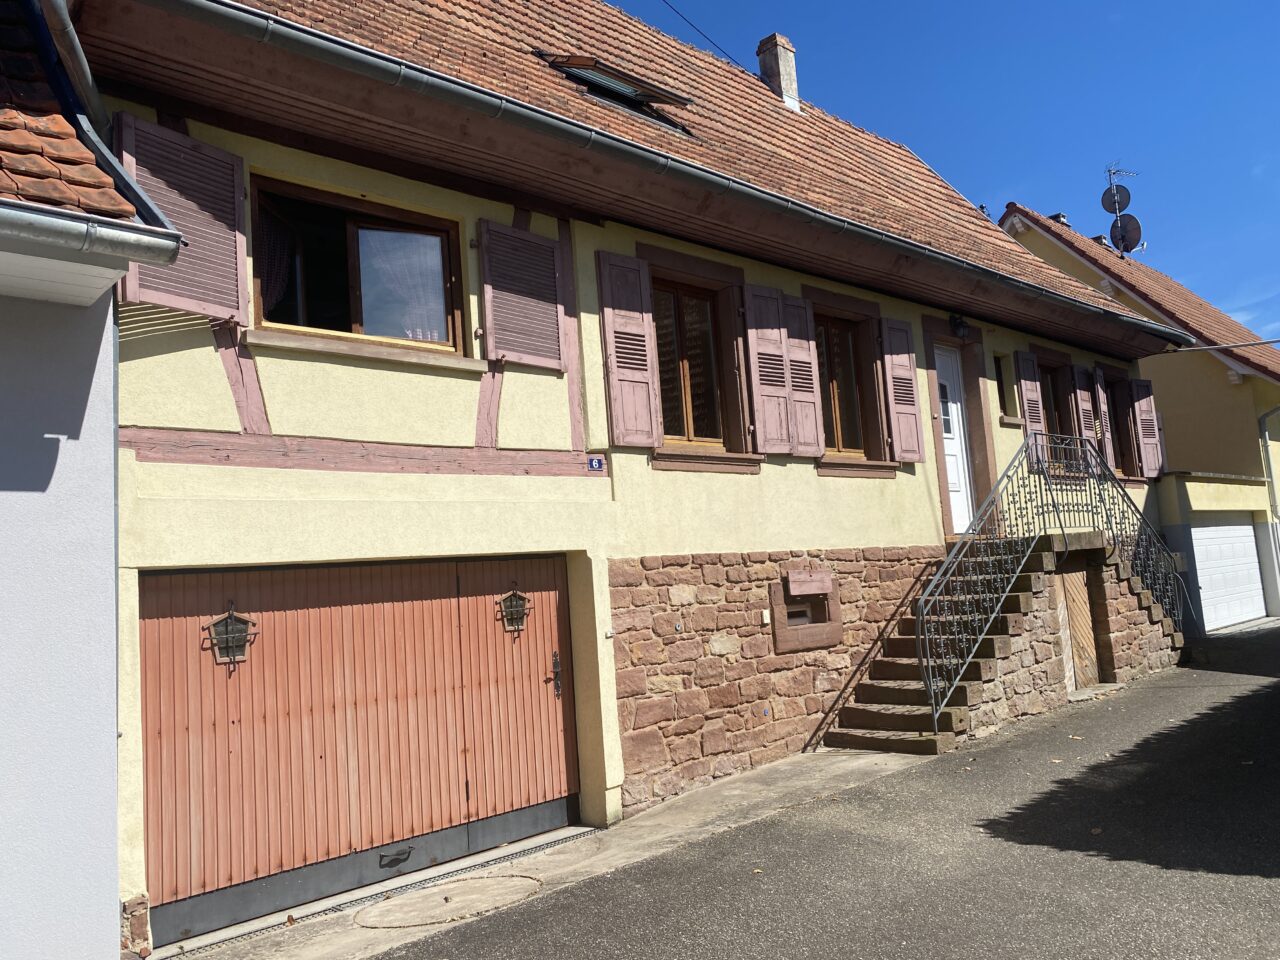 Eschbach belle maison alsacienne de 143m2 et une dépendance de 70m2 sur 3,3 ares. Vidéo disponible